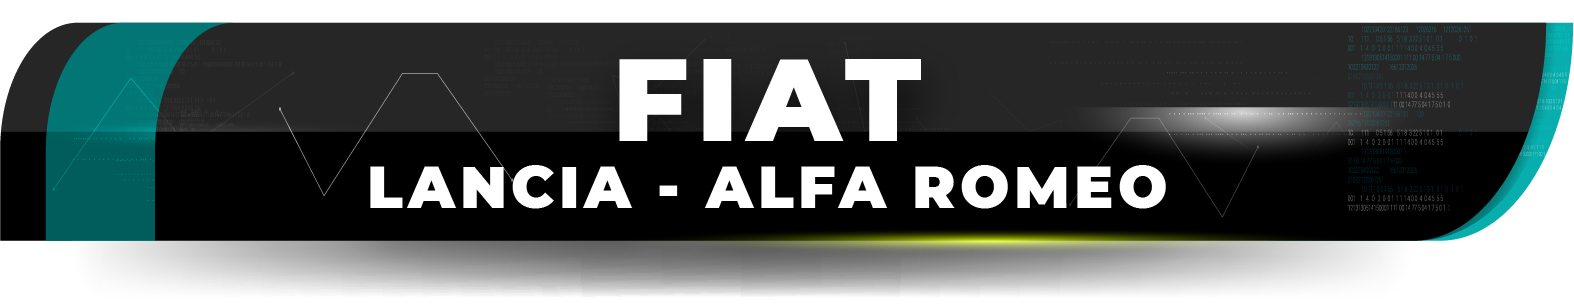 FIAT - LANCIA - ALFA ROMEO